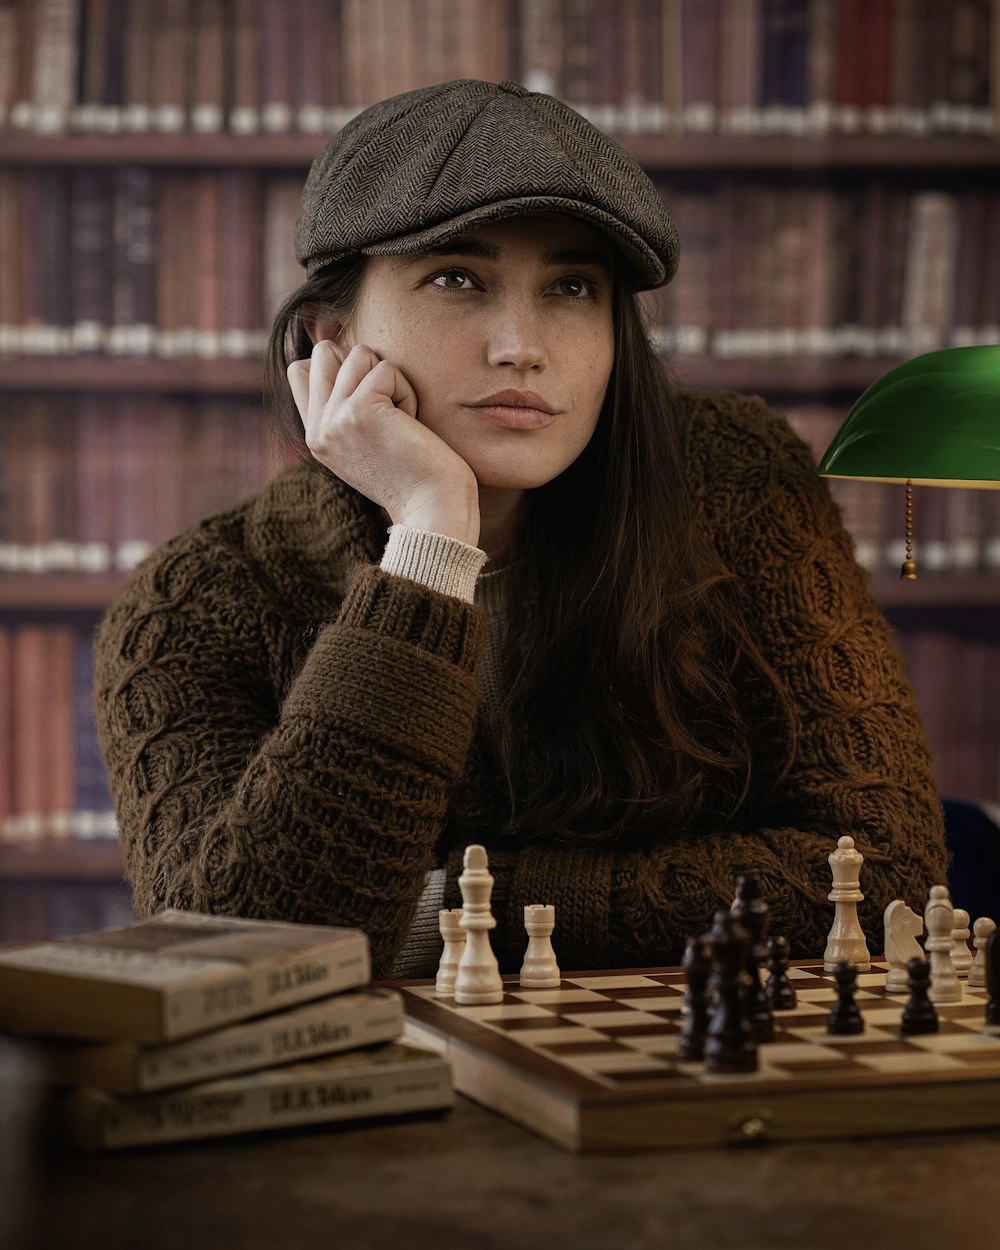 Una mujer sentada en una mesa con un tablero de ajedrez